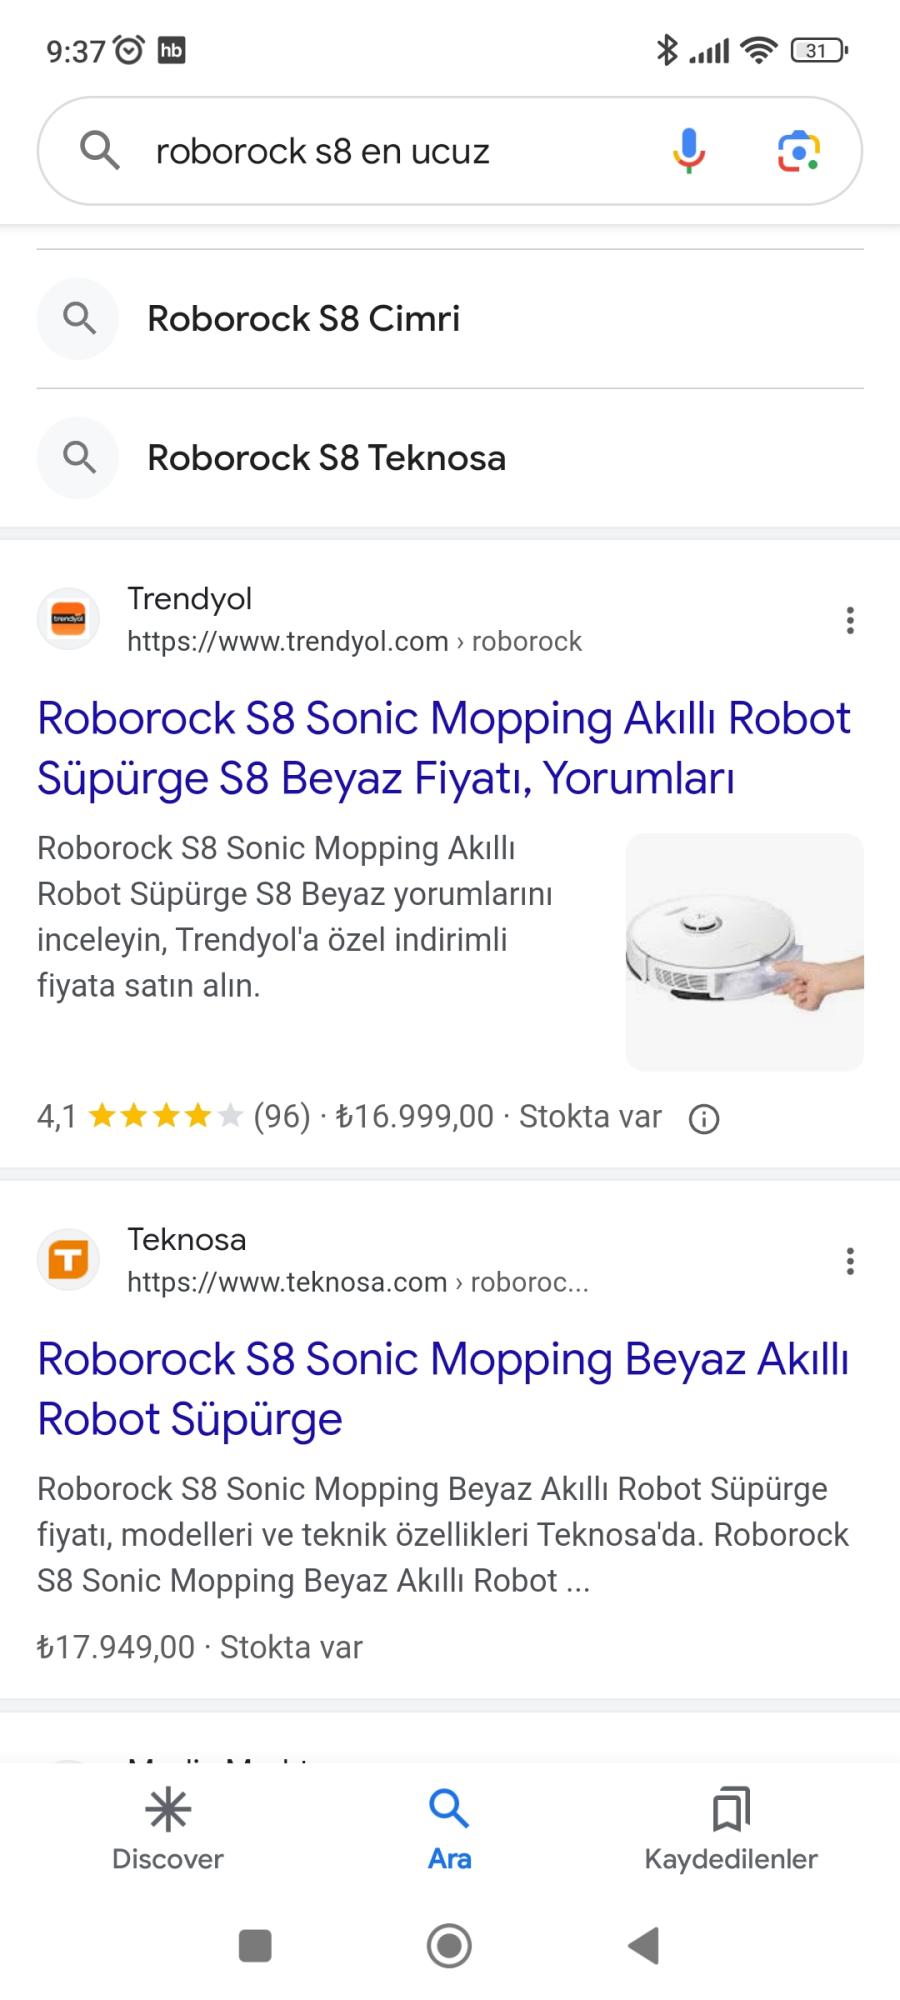 Roborock S8 Sonic Mopping Beyaz Akıllı Robot Süpürge Fiyatı ve Özellikleri  Kampanyaları & Fırsatları - Teknosa